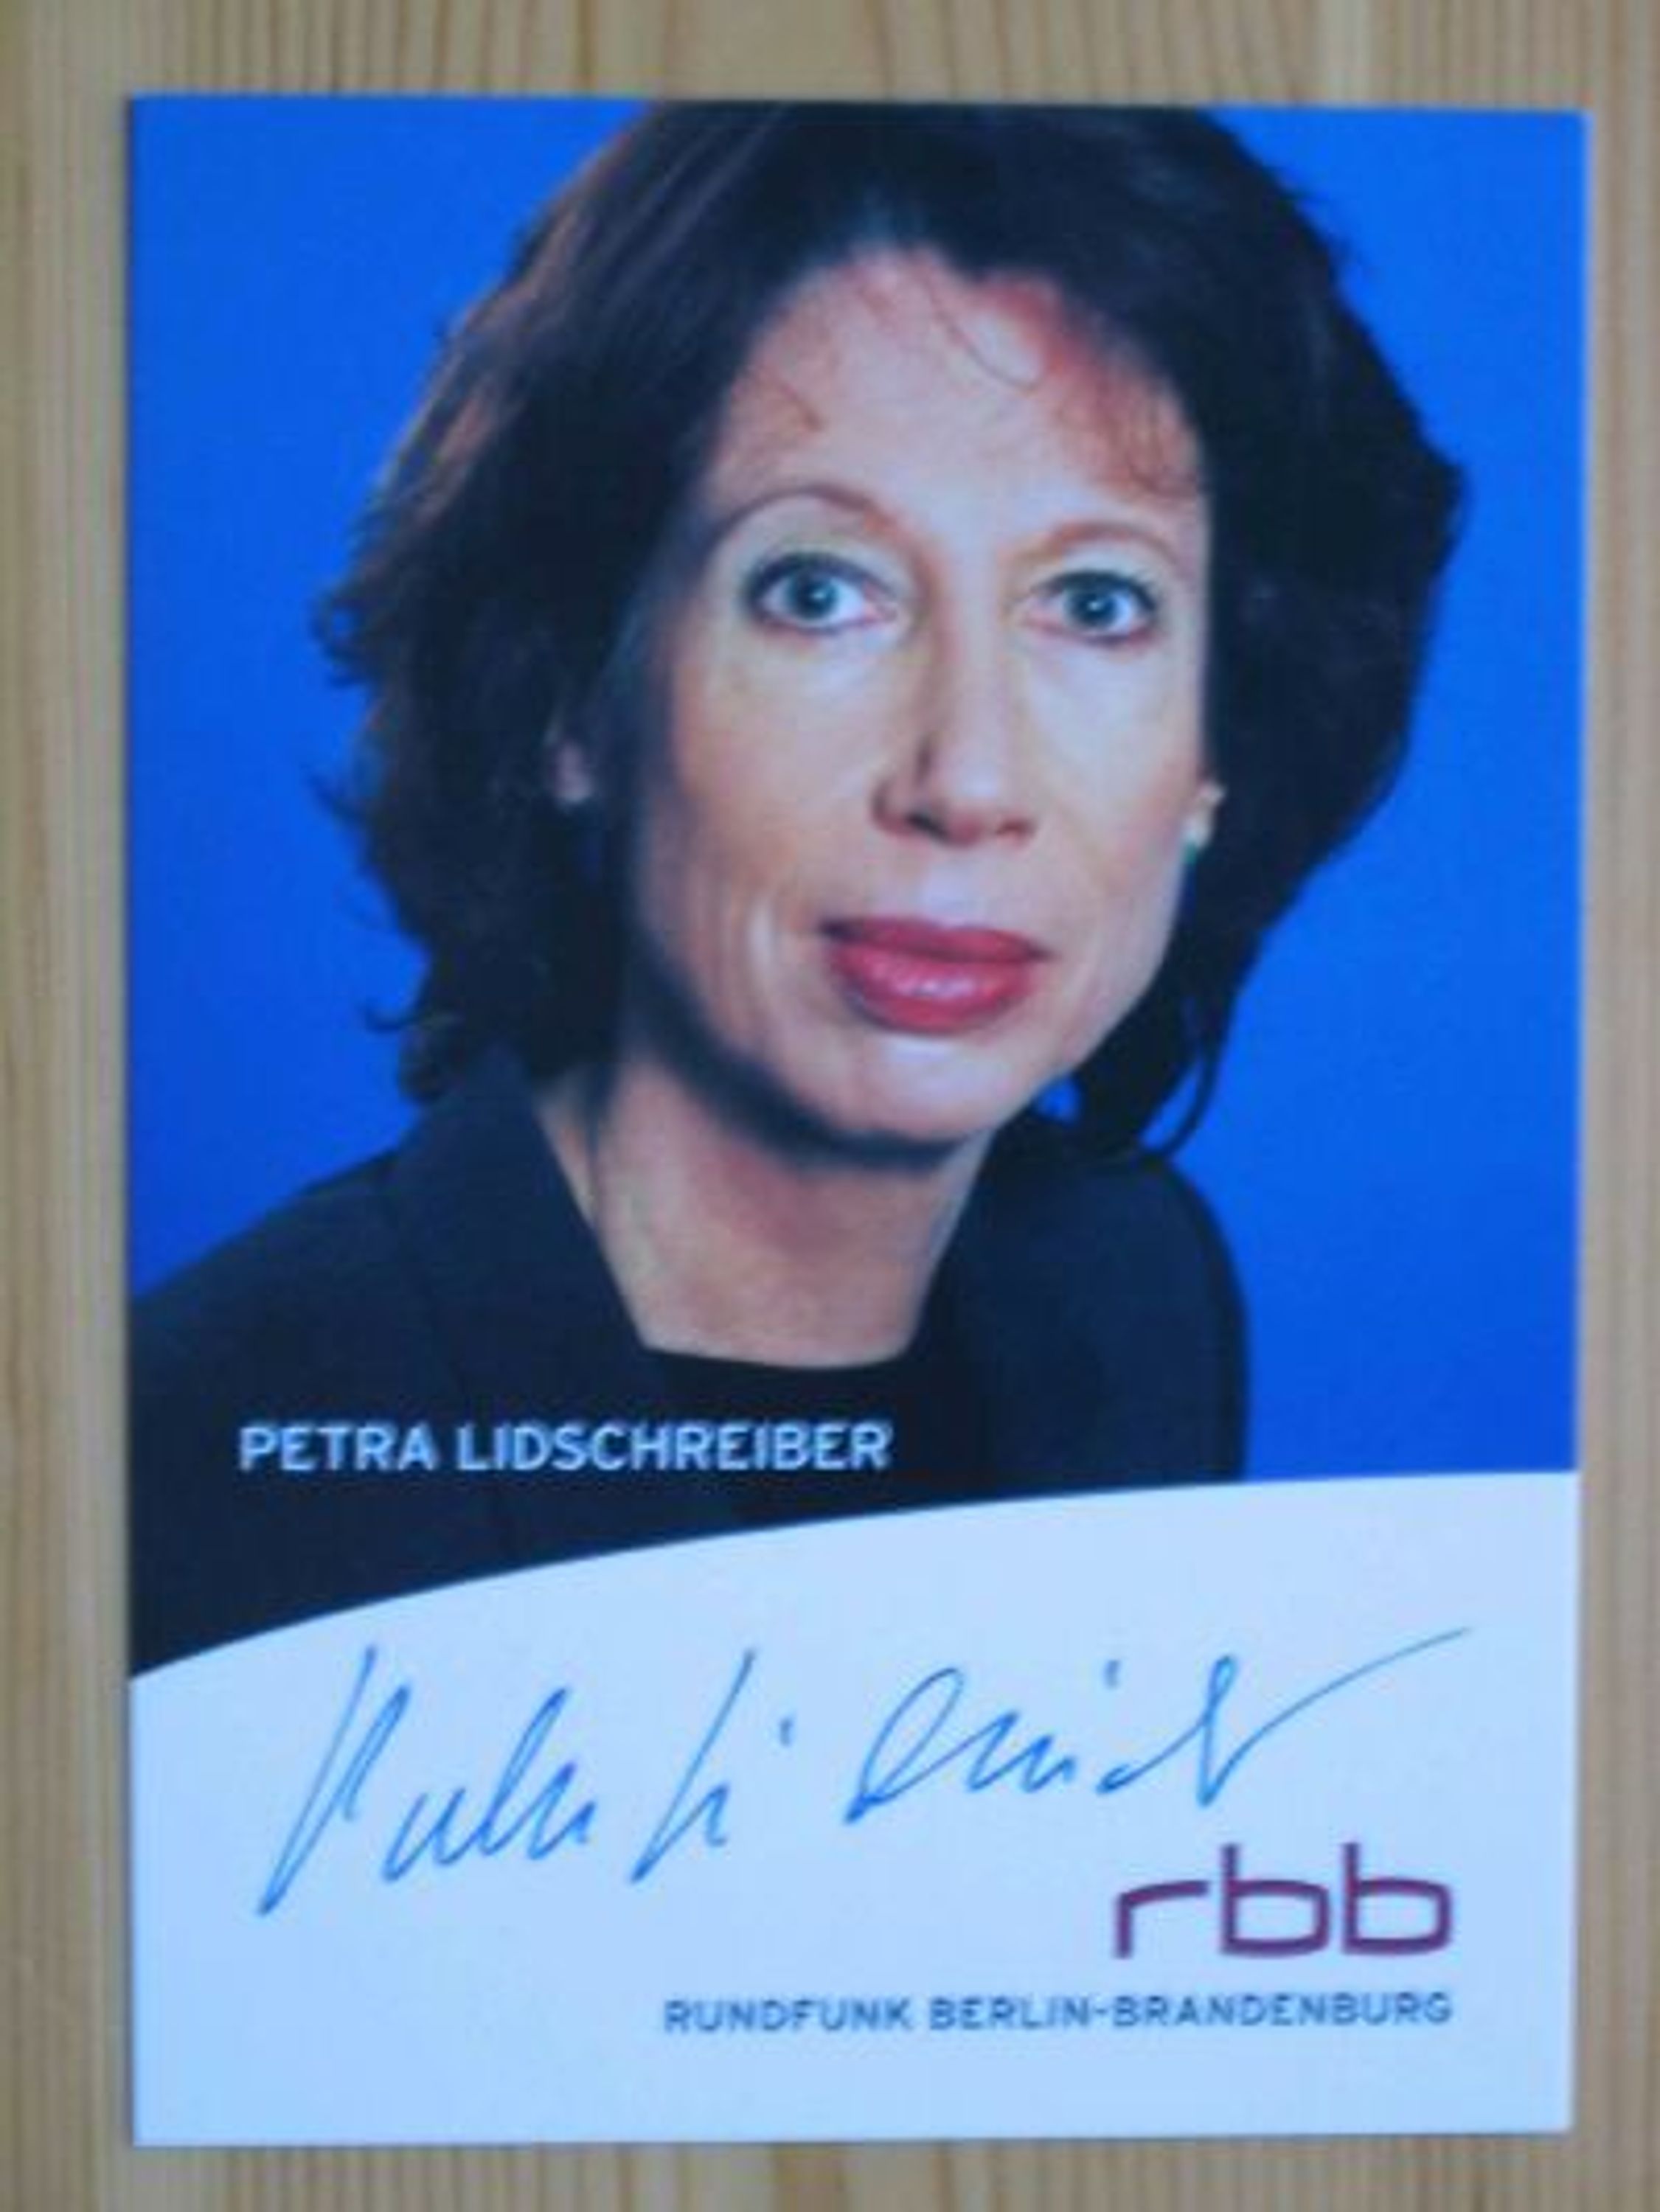 RBB Fernsehmoderator <b>Petra Lidschreiber</b> - Autogramm! gebraucht kaufen bei ... - 5206652